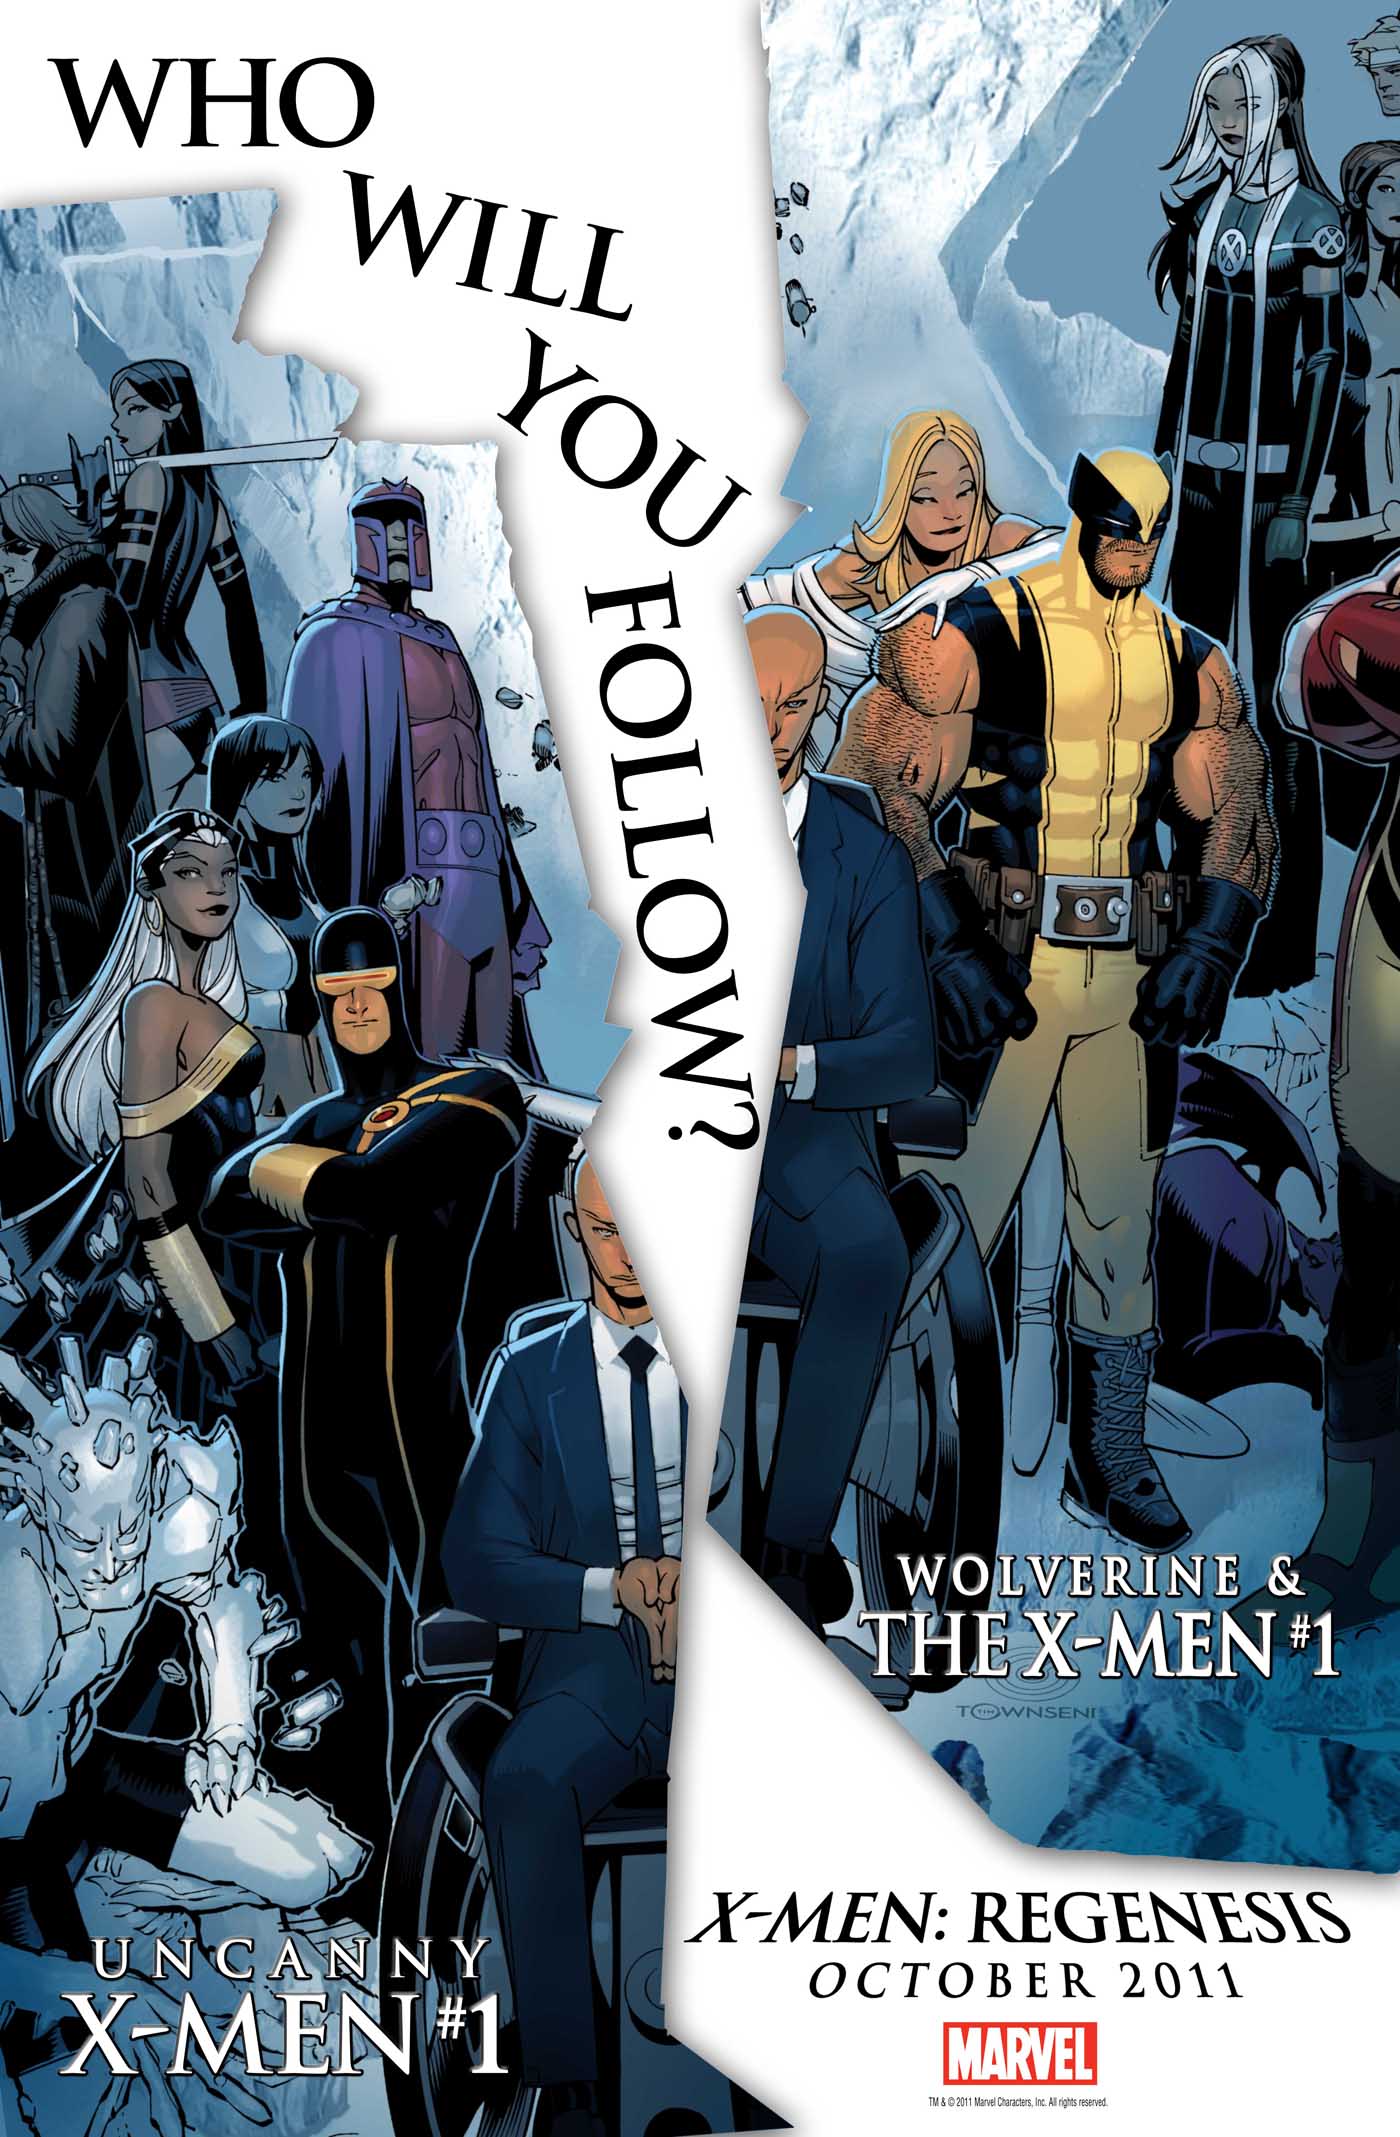 X-men: Schism Pics, Comics Collection